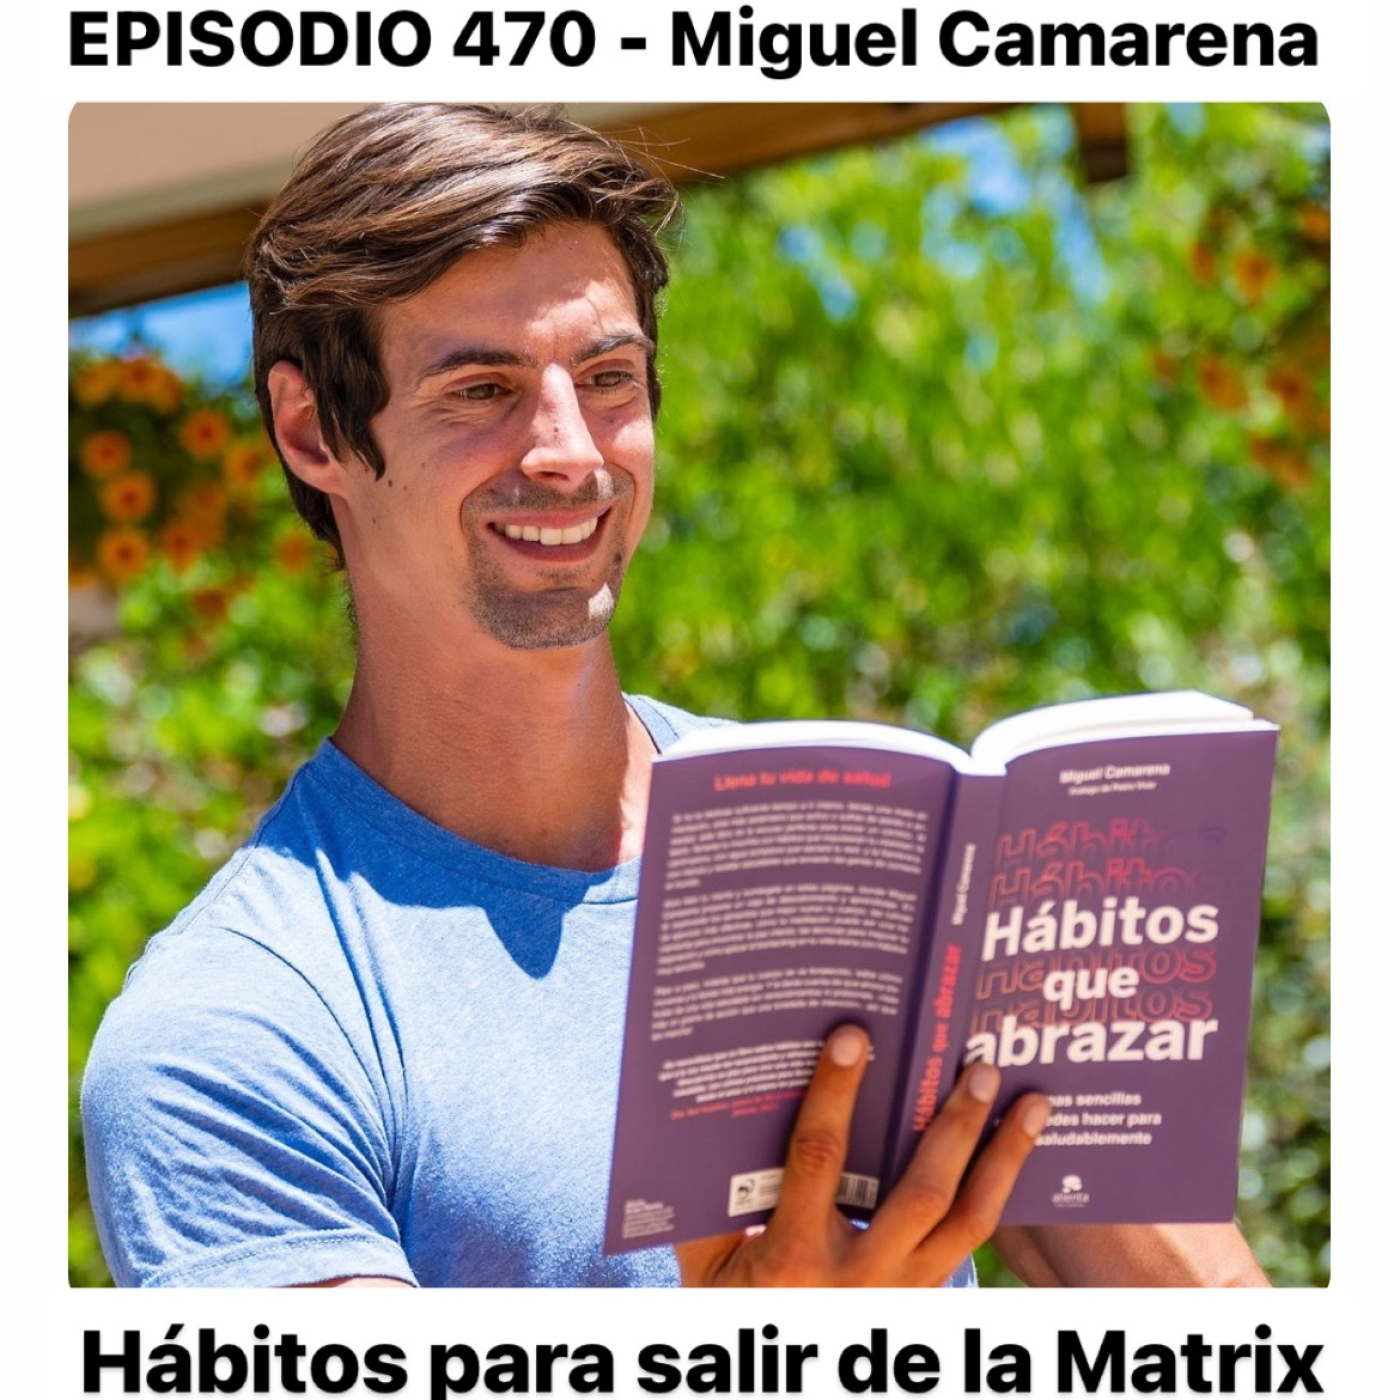 HÁBITOS PARA SALIR DE LA MATRIX - Miguel Camarena con Pedro Vivar